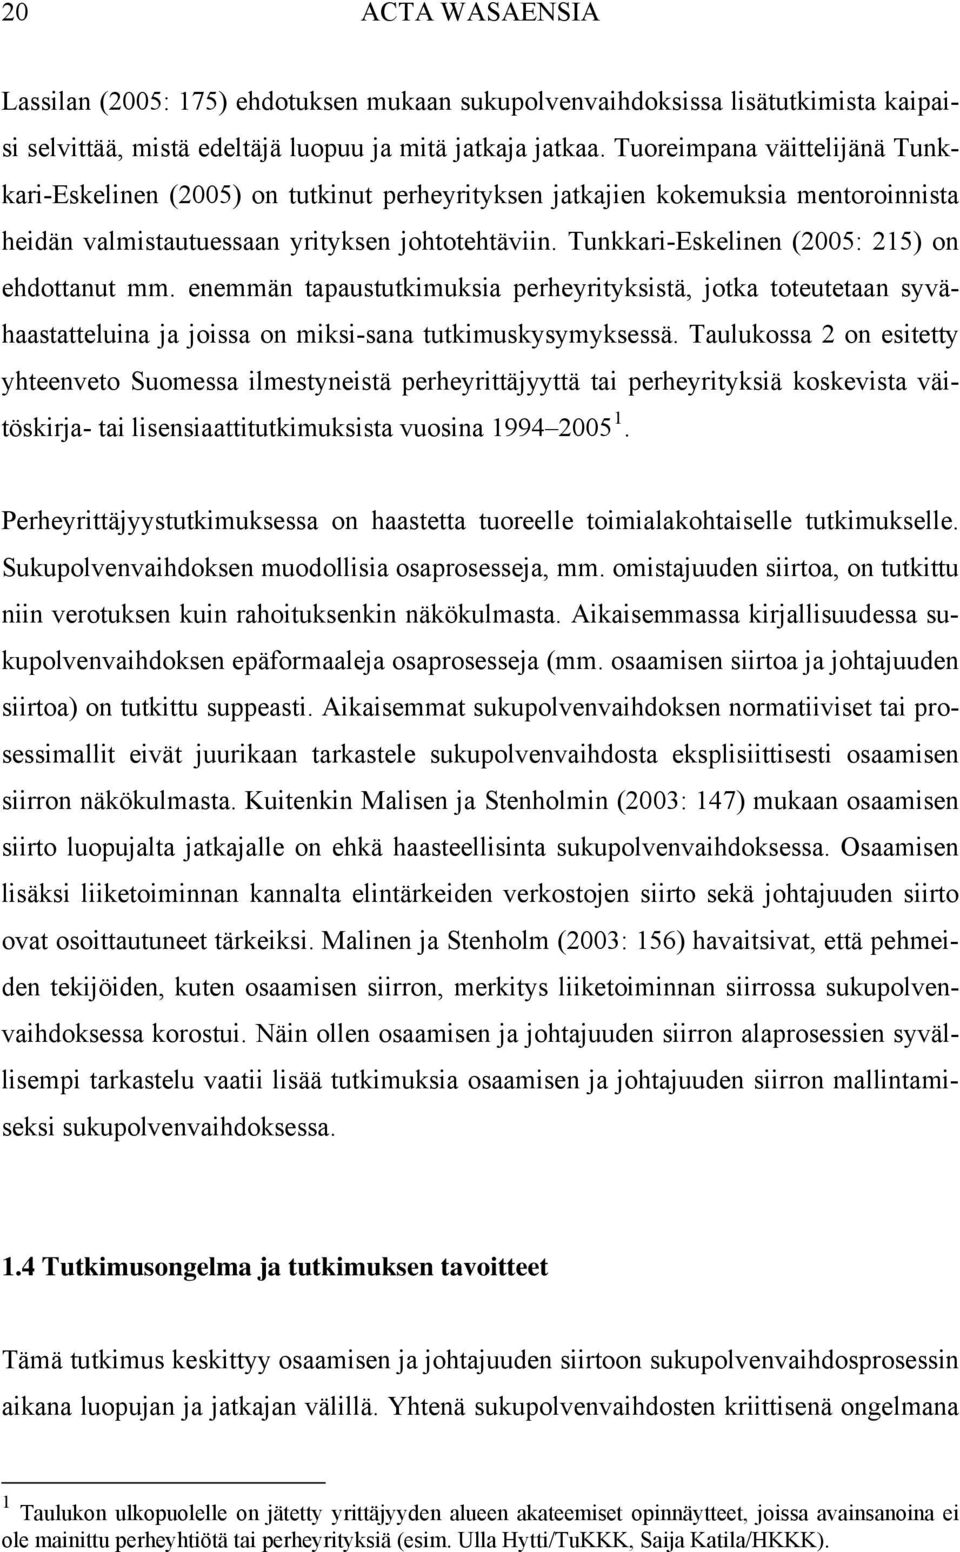 Tunkkari-Eskelinen (2005: 215) on ehdottanut mm. enemmän tapaustutkimuksia perheyrityksistä, jotka toteutetaan syvähaastatteluina ja joissa on miksi-sana tutkimuskysymyksessä.